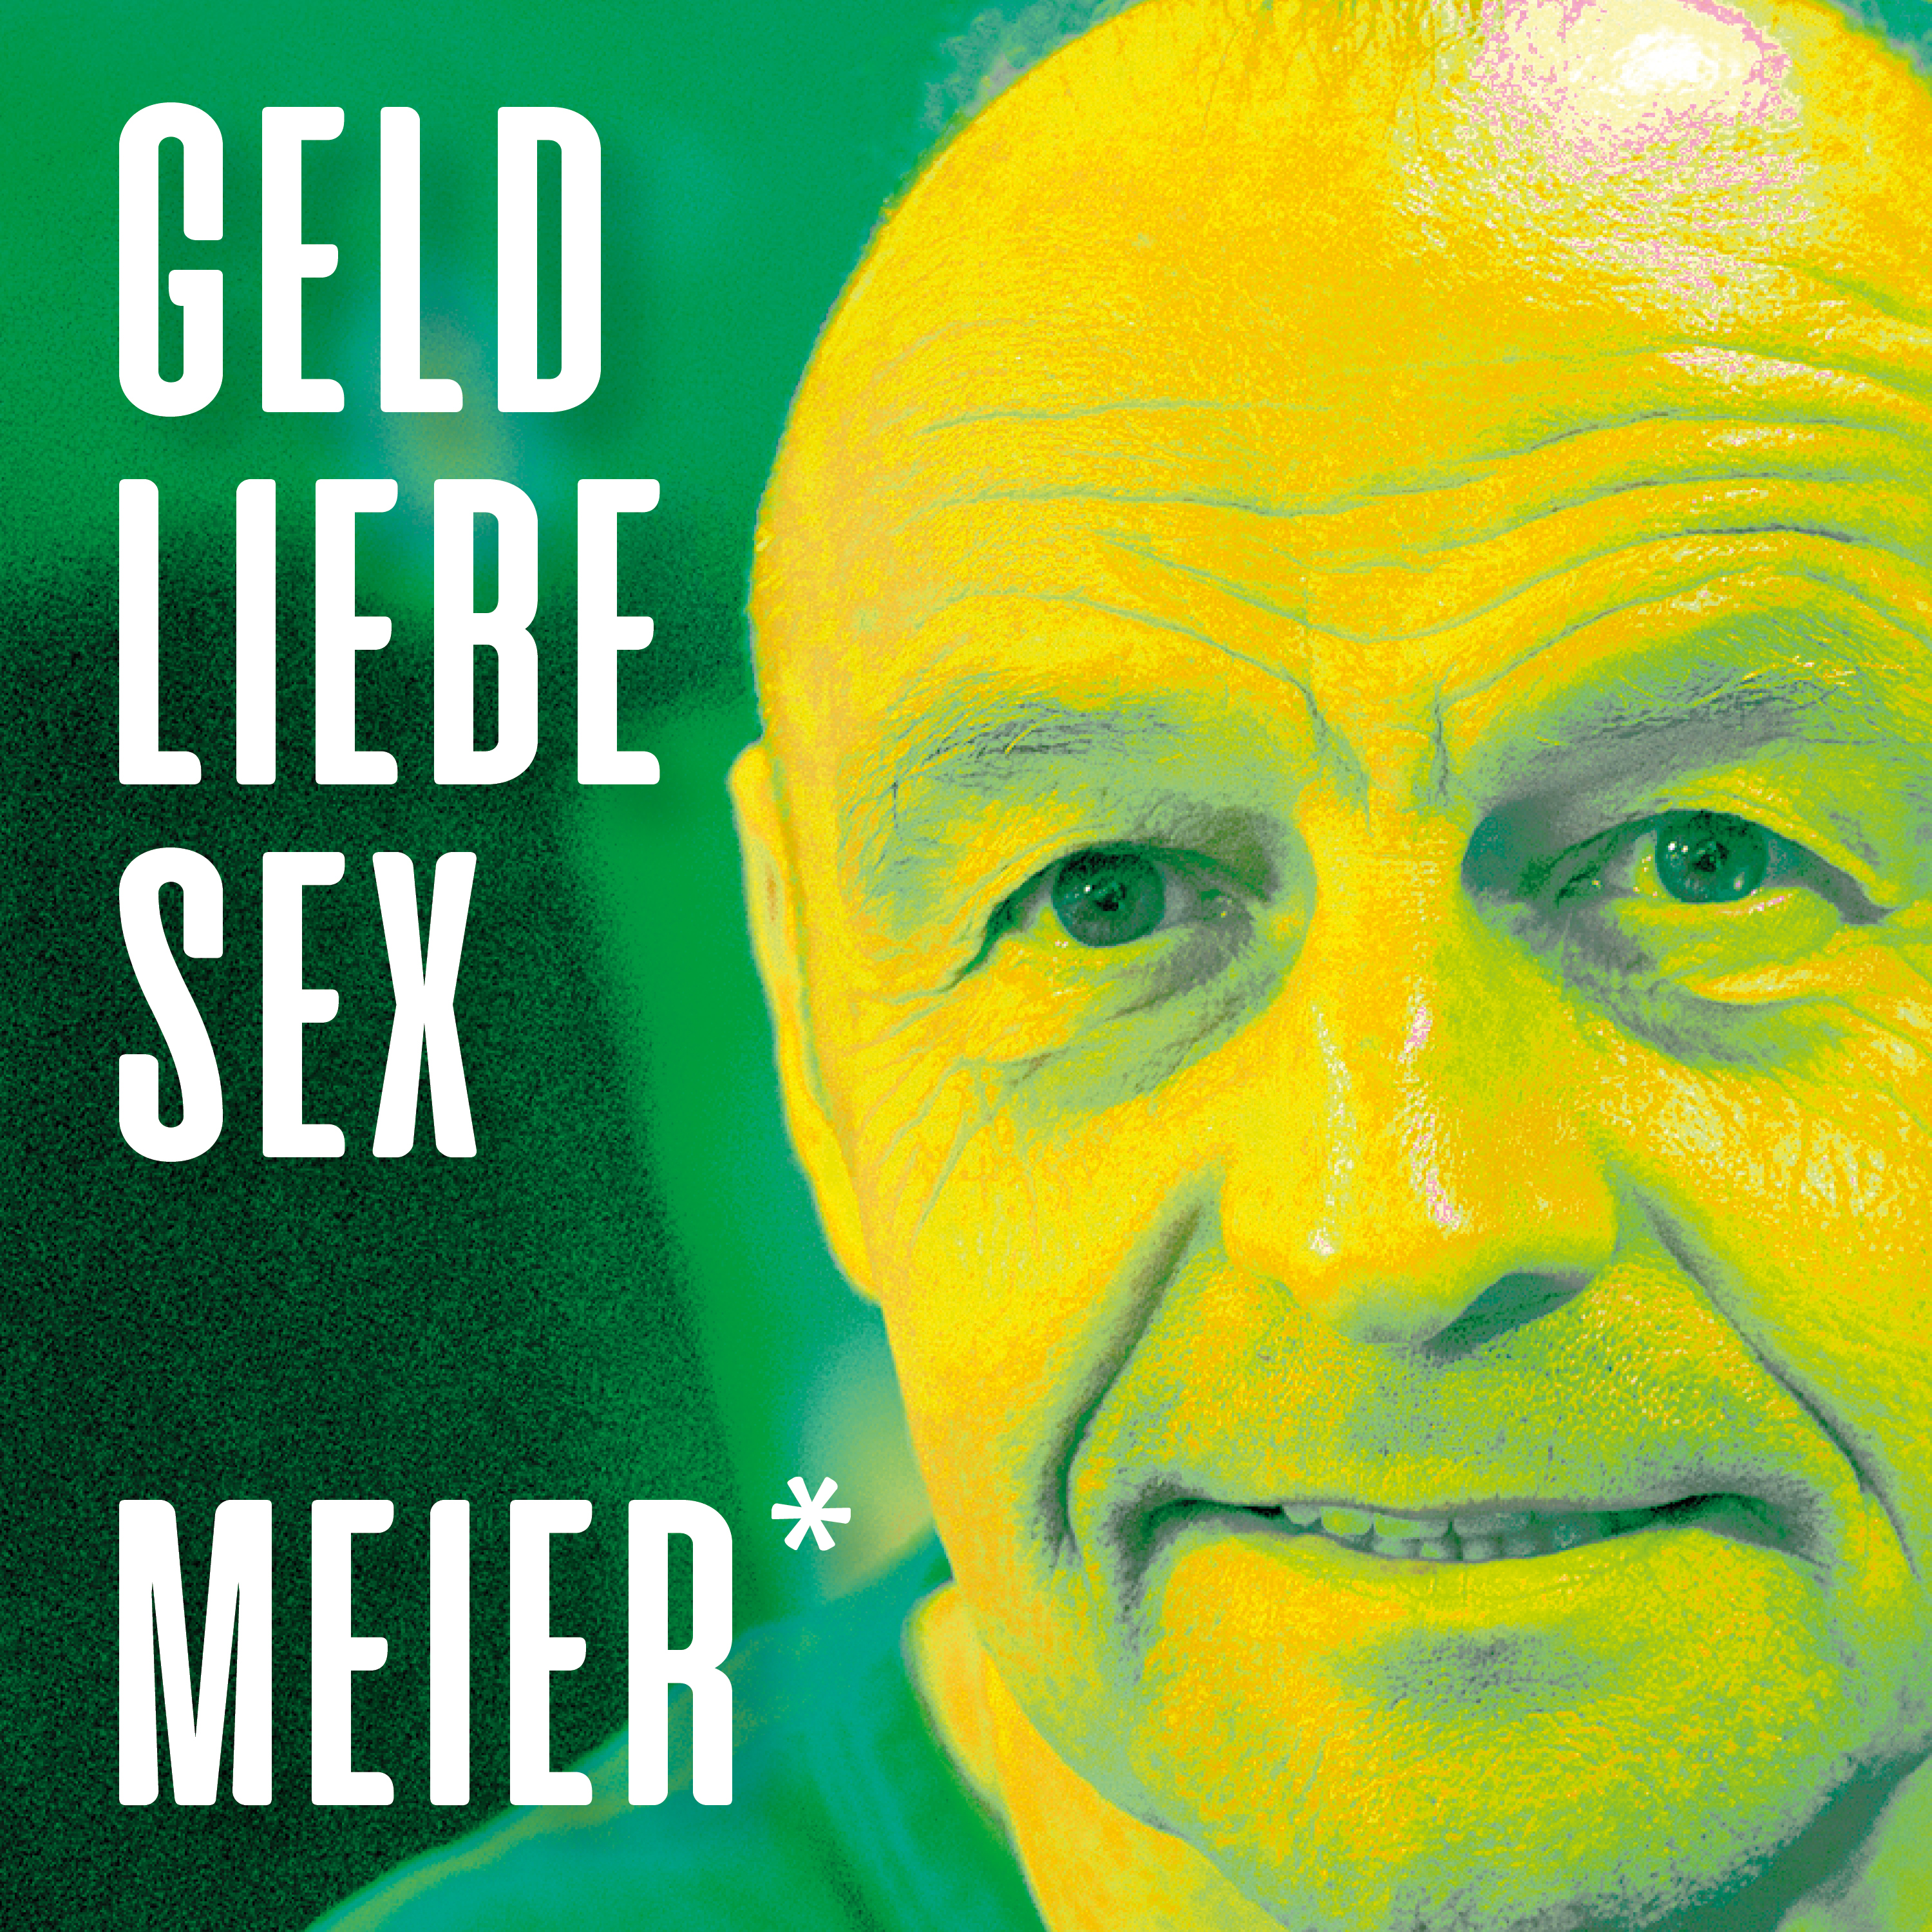 EP_Geld_Liebe_Sex